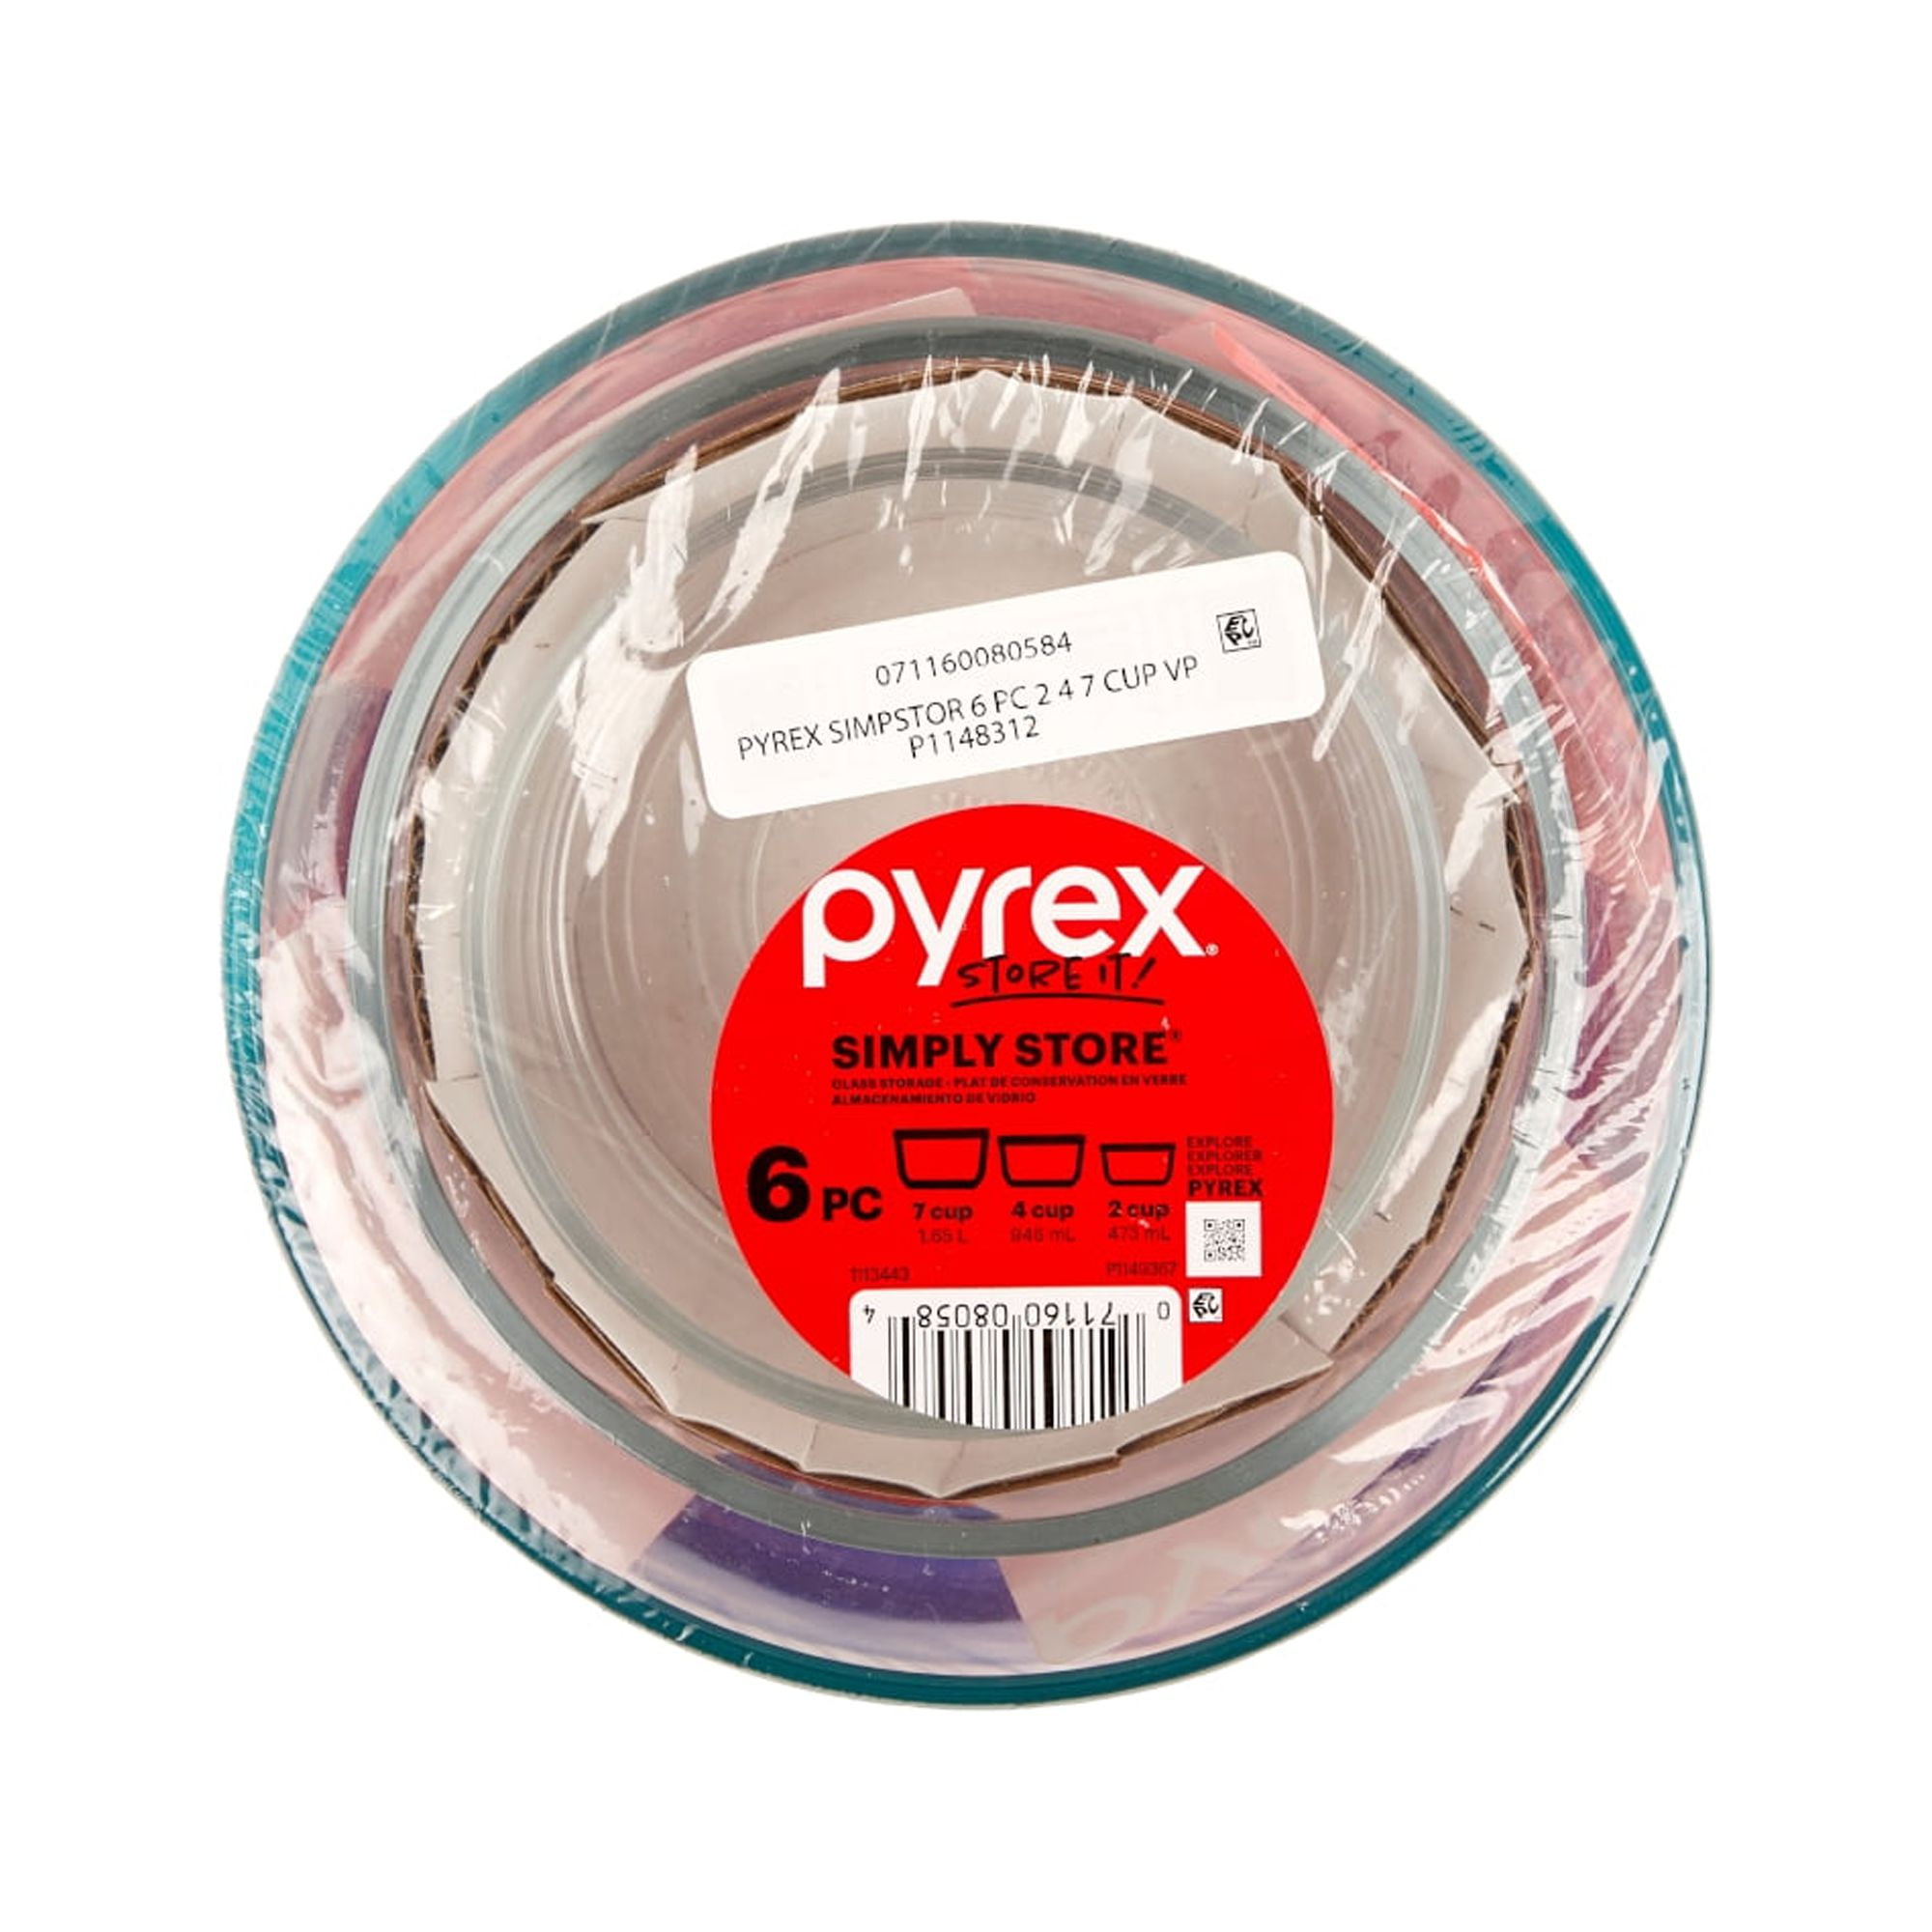 Pyrex Smart Essentials Covered Glass Pyrex Bowl Set (6-Piece) - Baller  Hardware